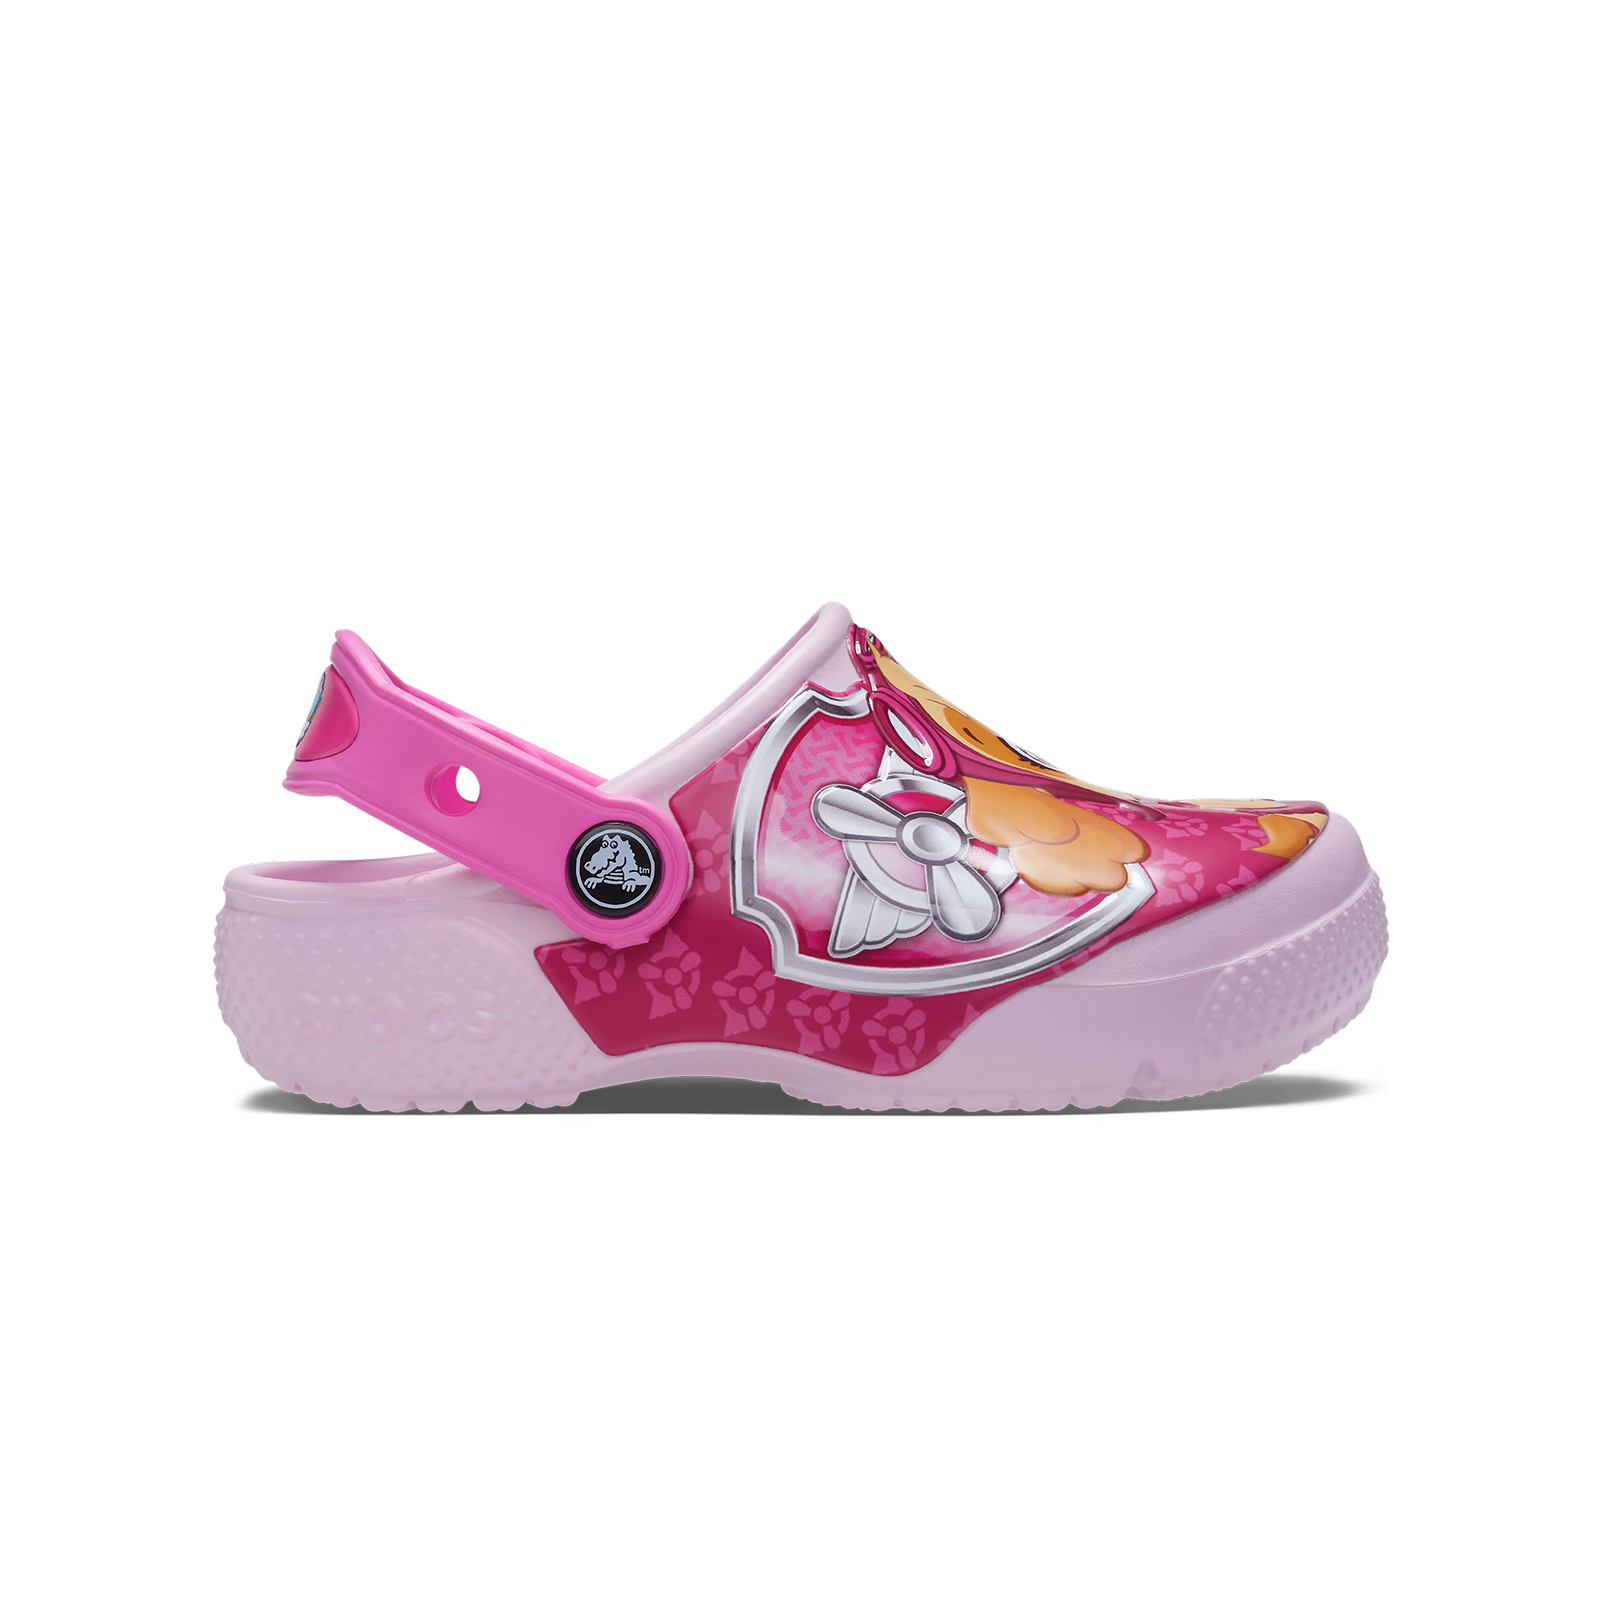 Παιδικά > Παπούτσια > Clogs > Glogs Crocs - FL PAW PATROL PATCH CG T - BALLERINA PINK